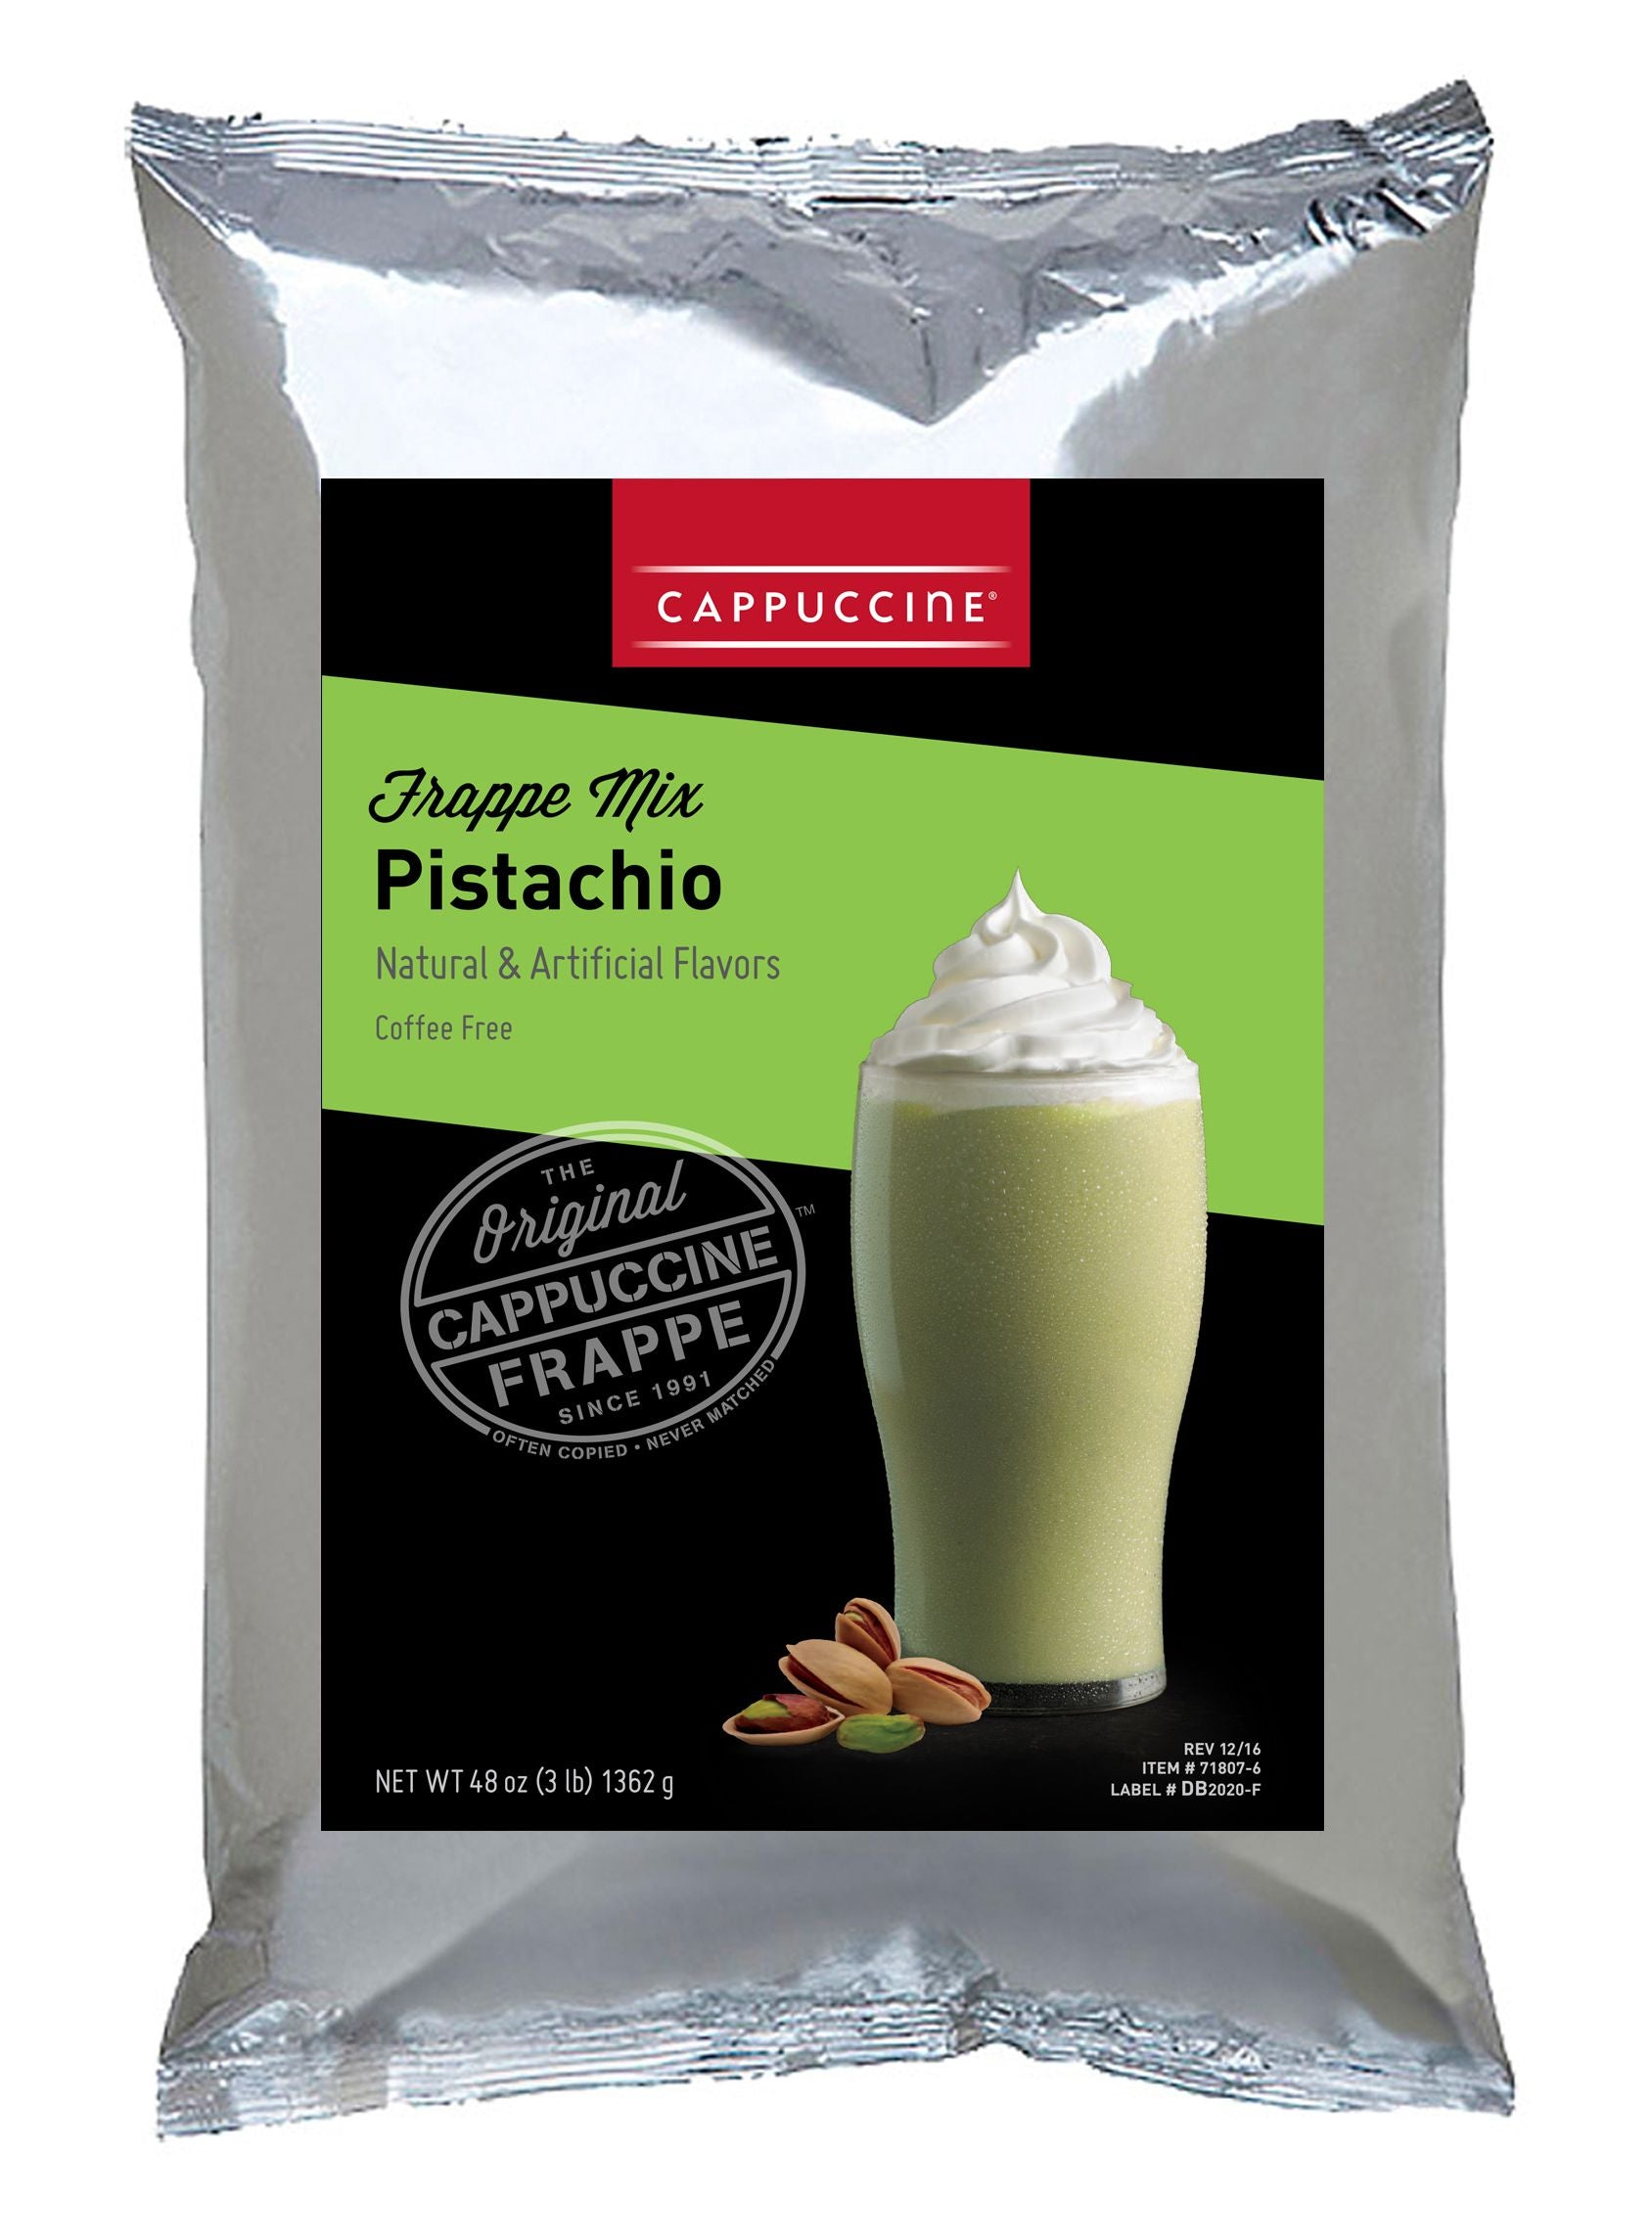 Cappuccine Frappe Mix - 3 lb. Bulk Bag: Pistachio